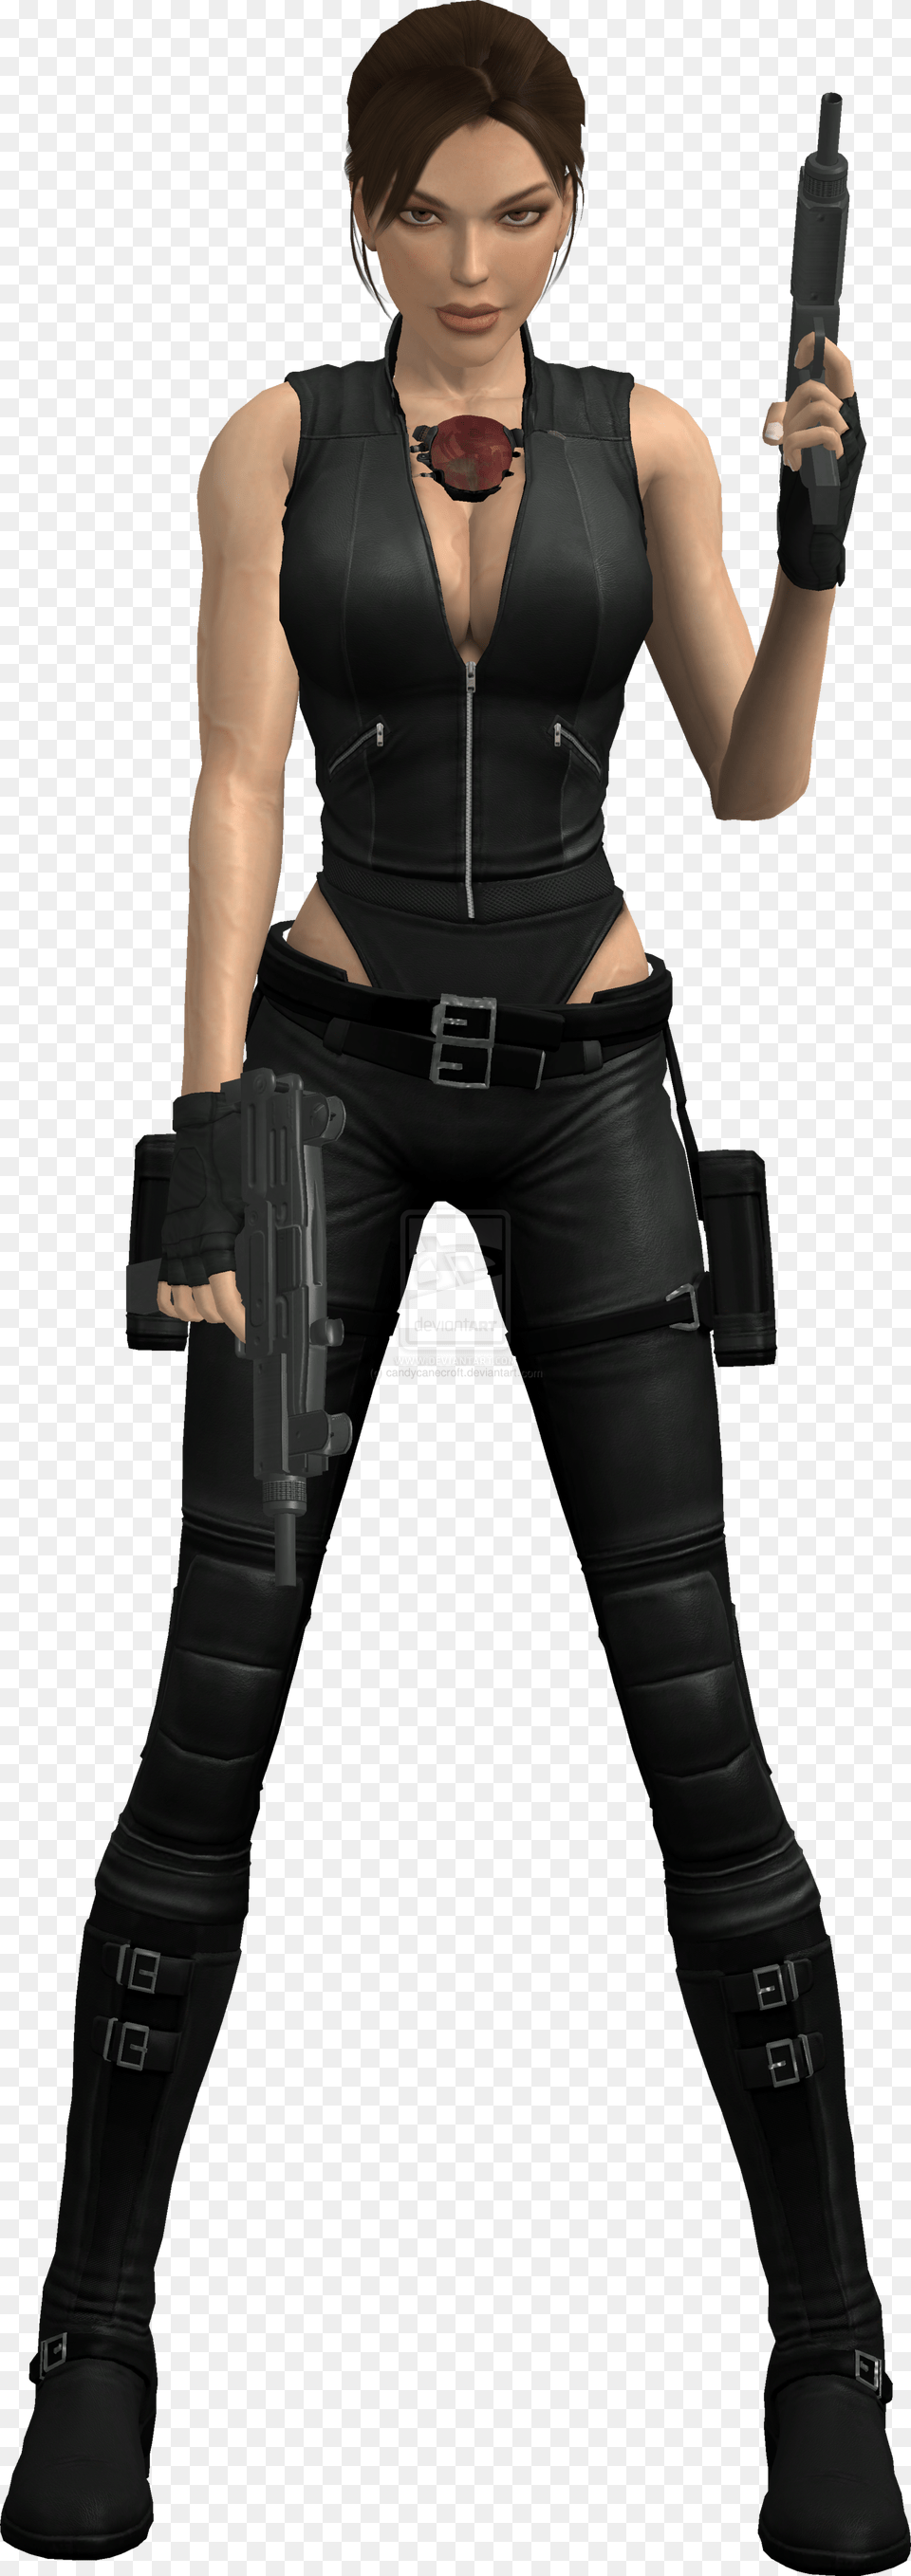 Lara Croft, Handgun, Weapon, Clothing, Costume Free Transparent Png